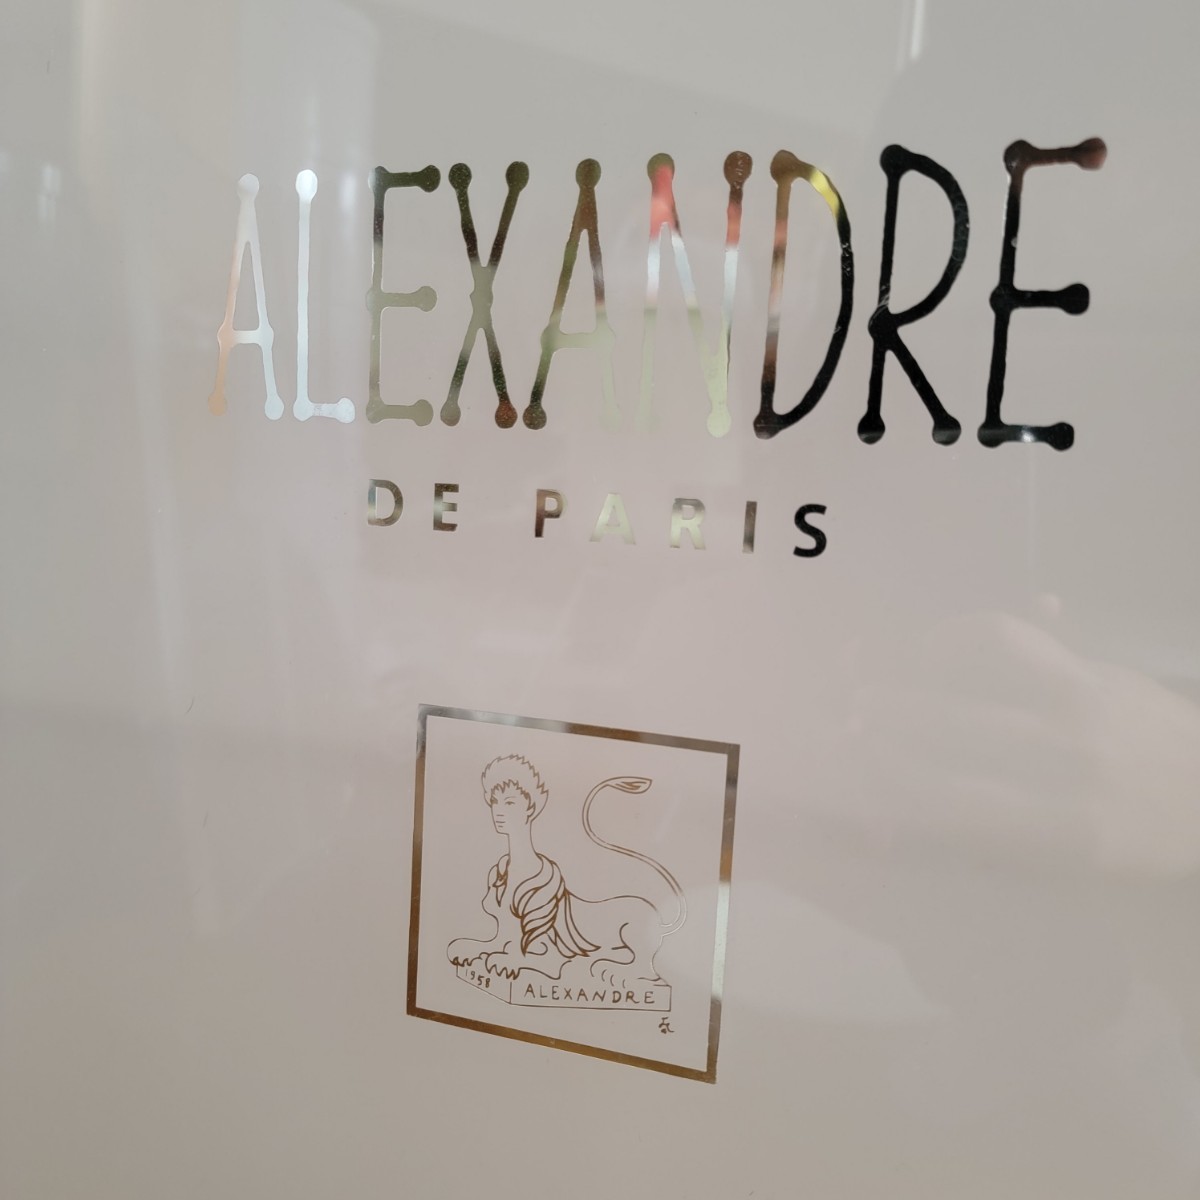 非売品 alexandre de paris アイテム メイクワゴン 美容室 化粧品 コスメ 開業 販売促進 店舗什器 アレクサンドルドゥパリ 高級コスメ の画像9